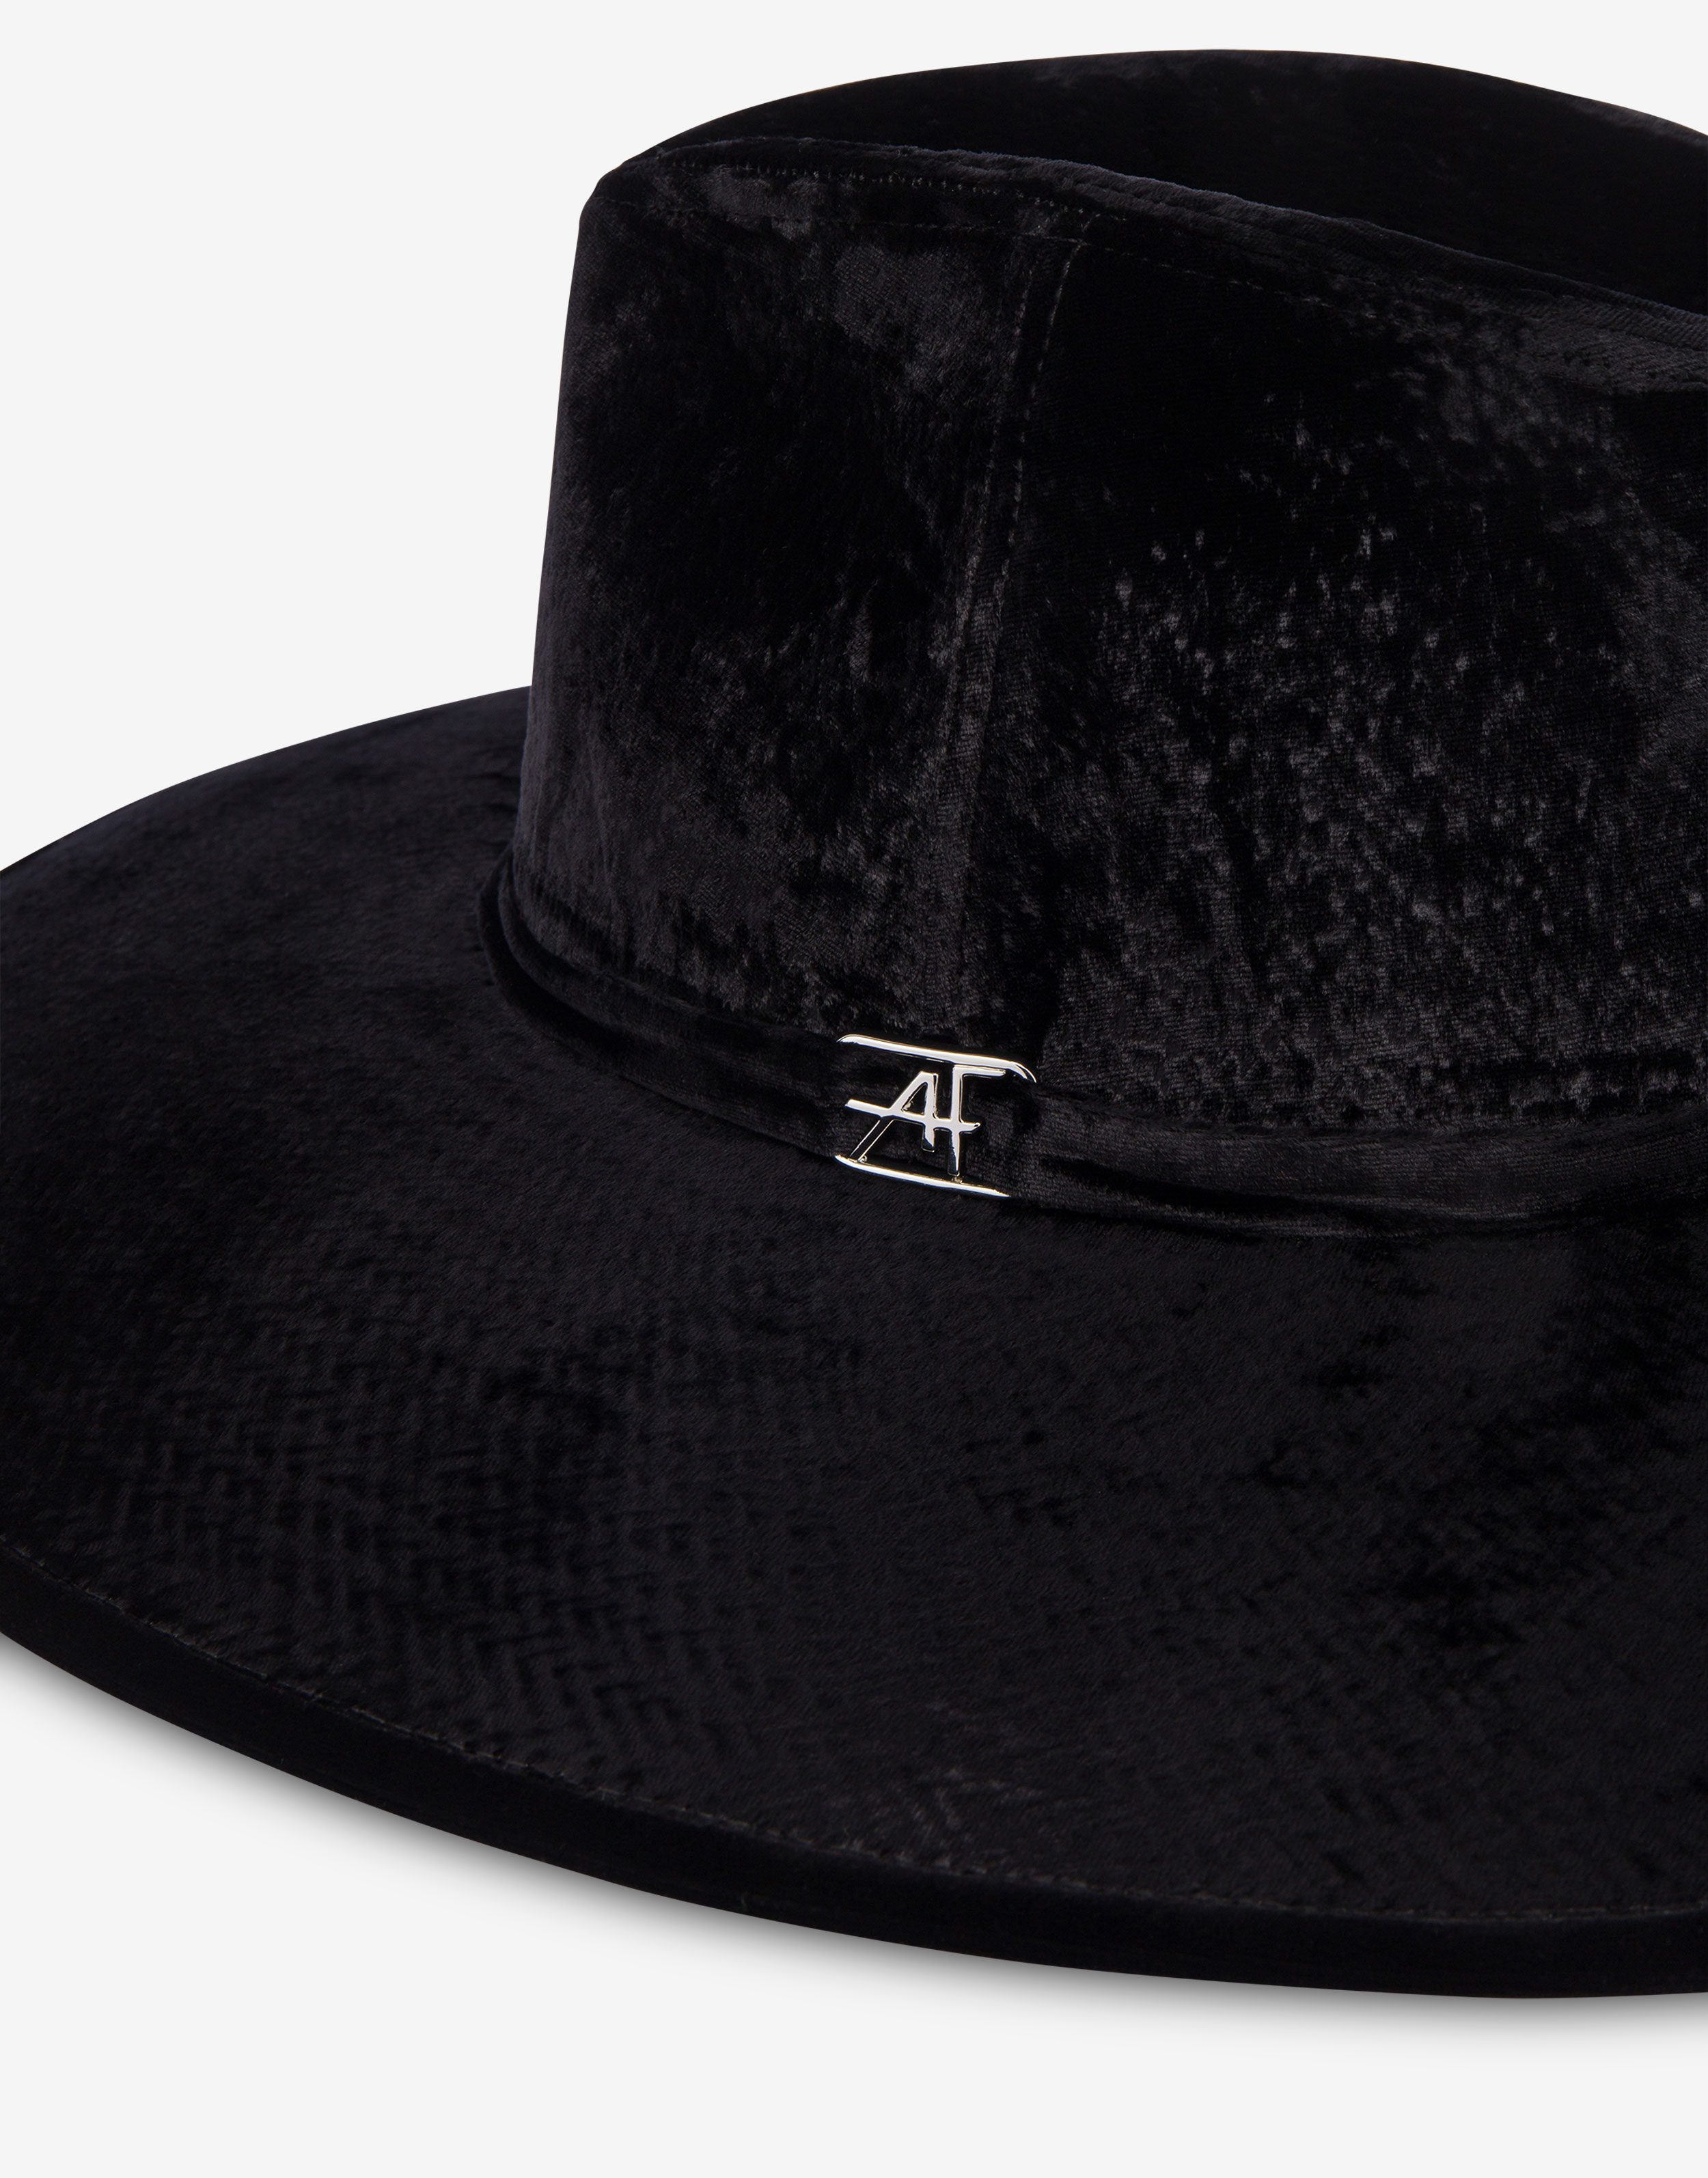 Velvet hat with AF logo